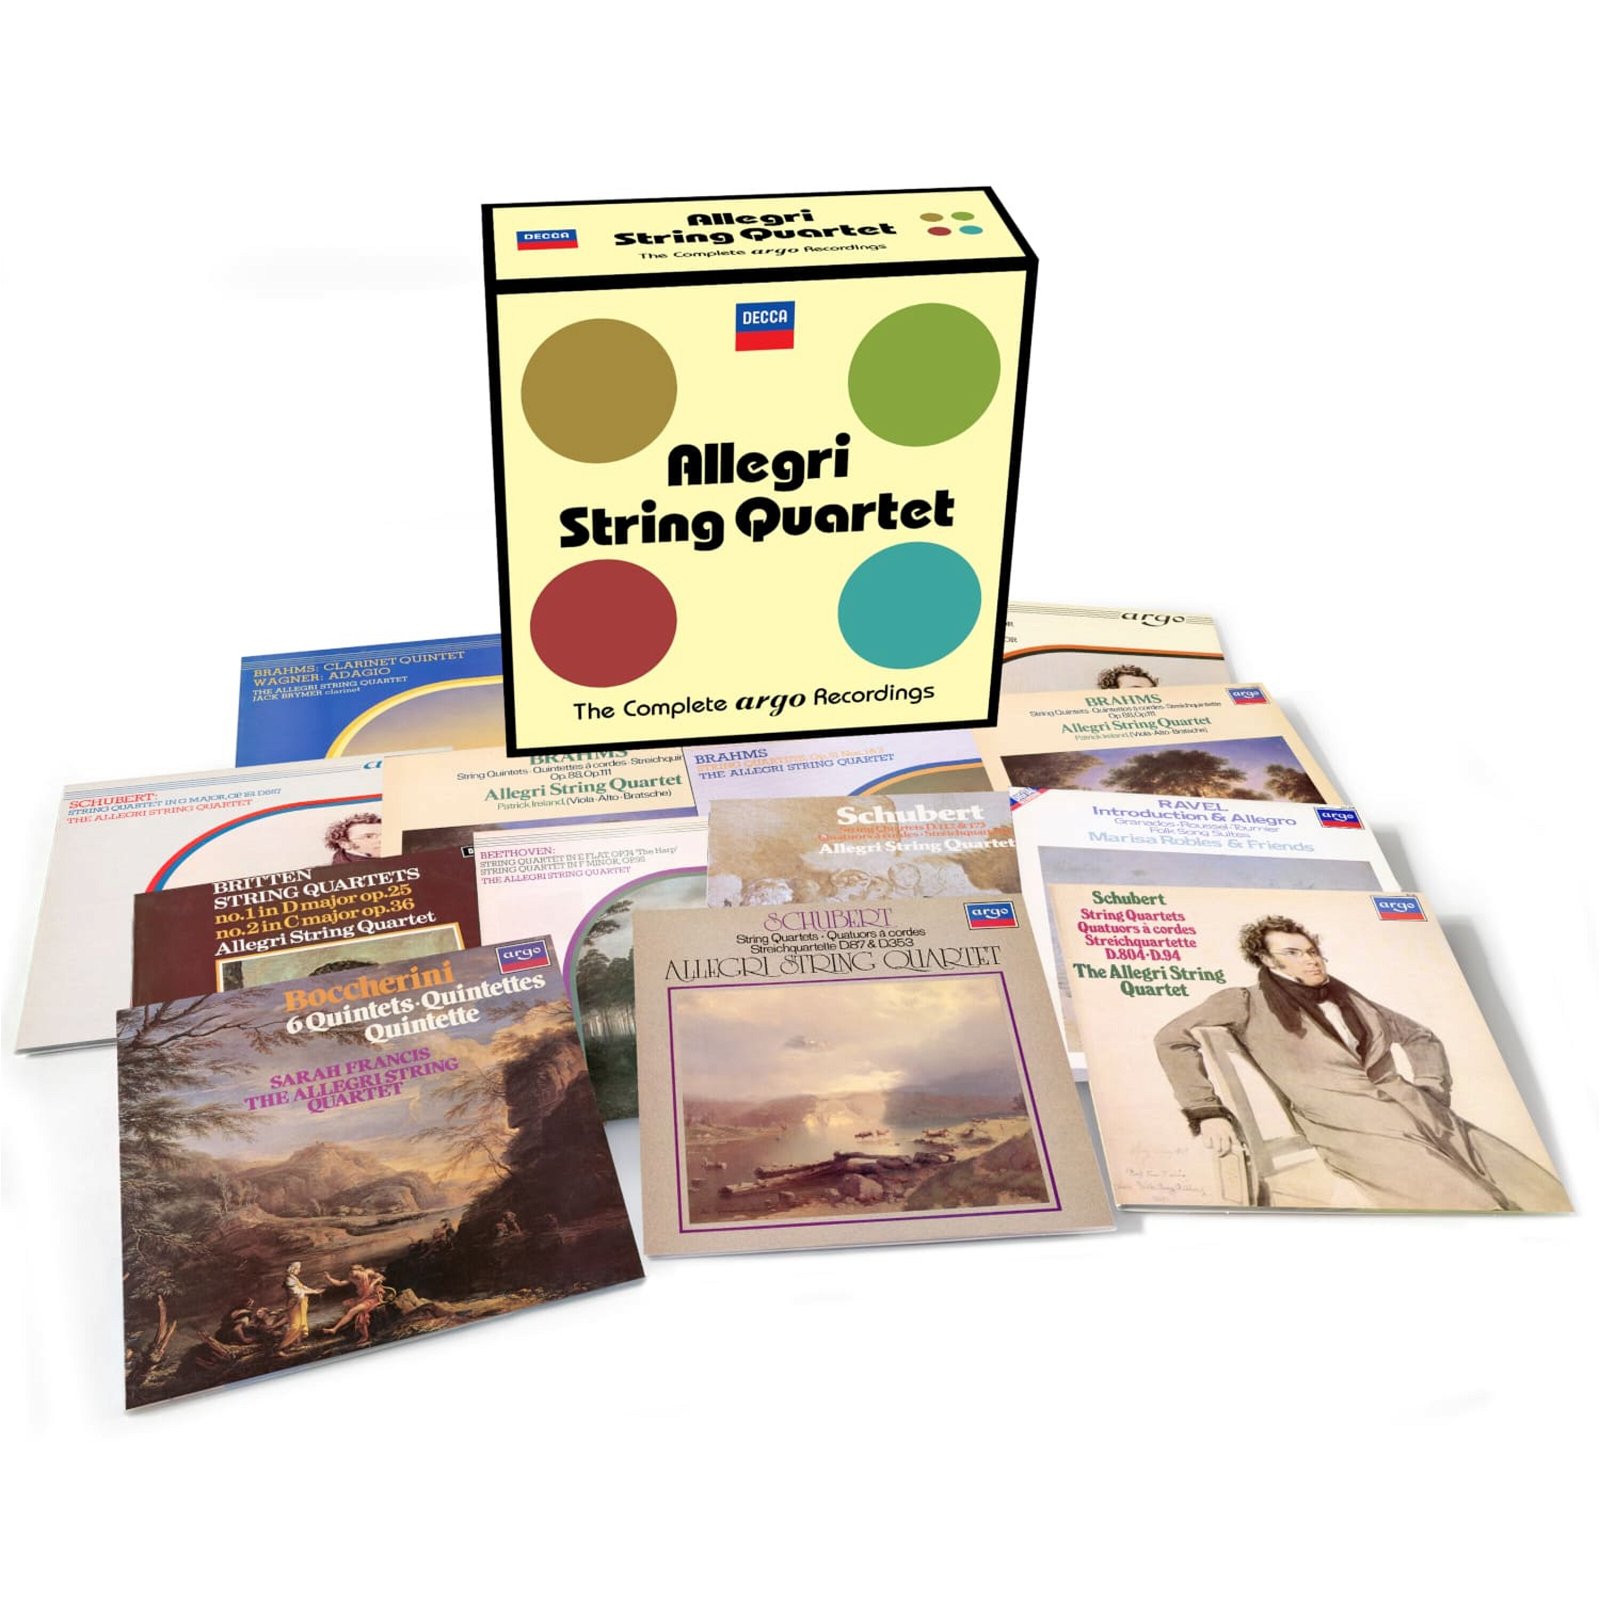 CD Shop - ALLEGRI STRING QUARTET COMPLETE ARGO RECORDINGS